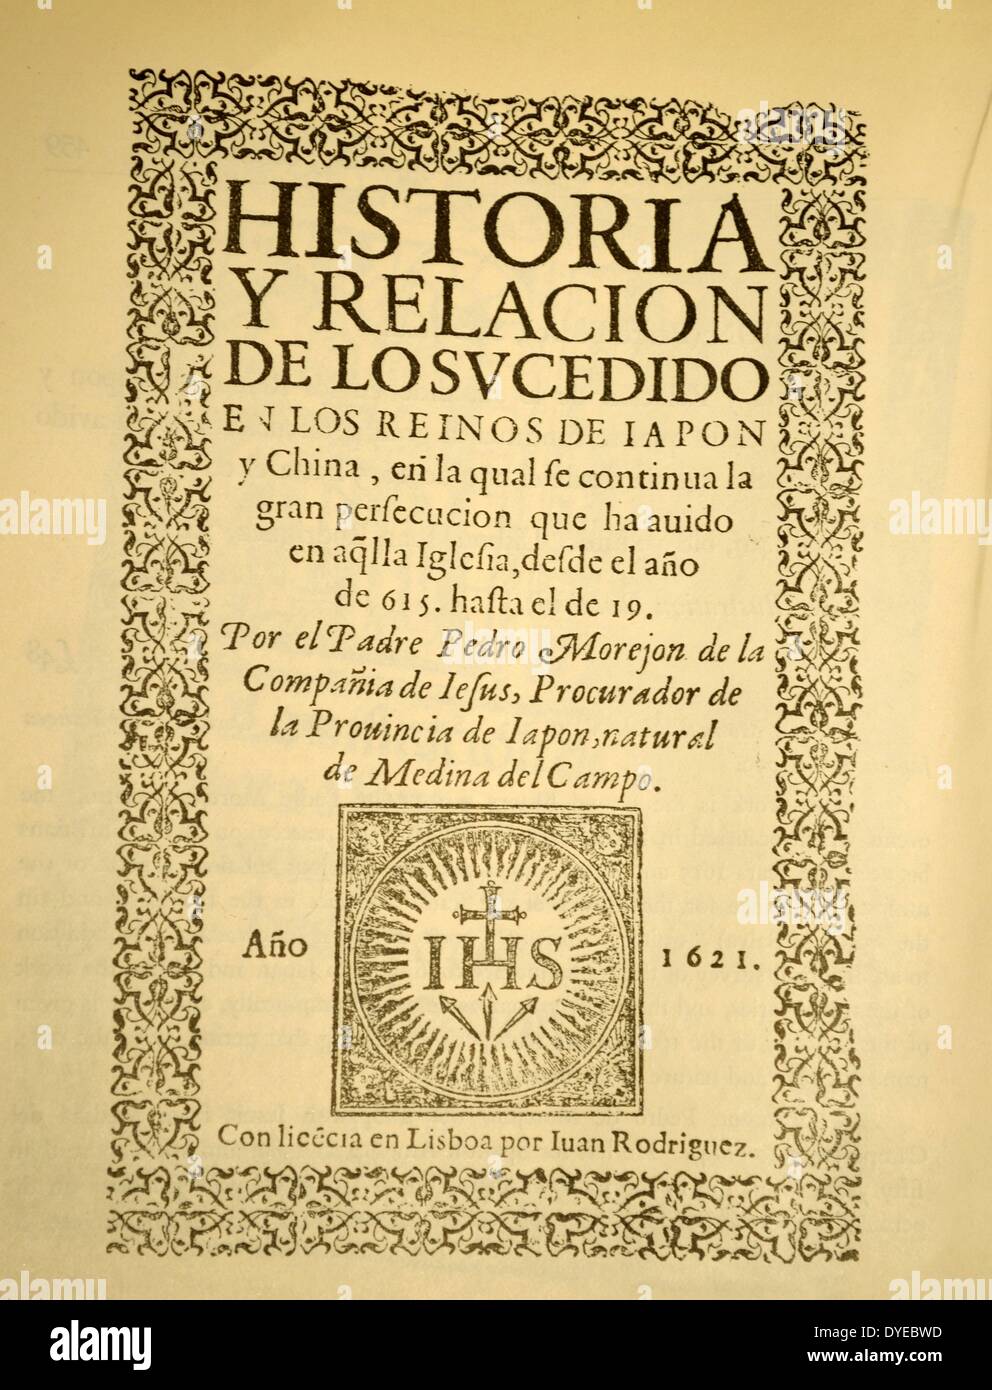 Title page from Pedro Morejon. Historia y Relacion de lo Sucedido en Japon, 1615-1619. Lisbon. Dated 1621 Stock Photo